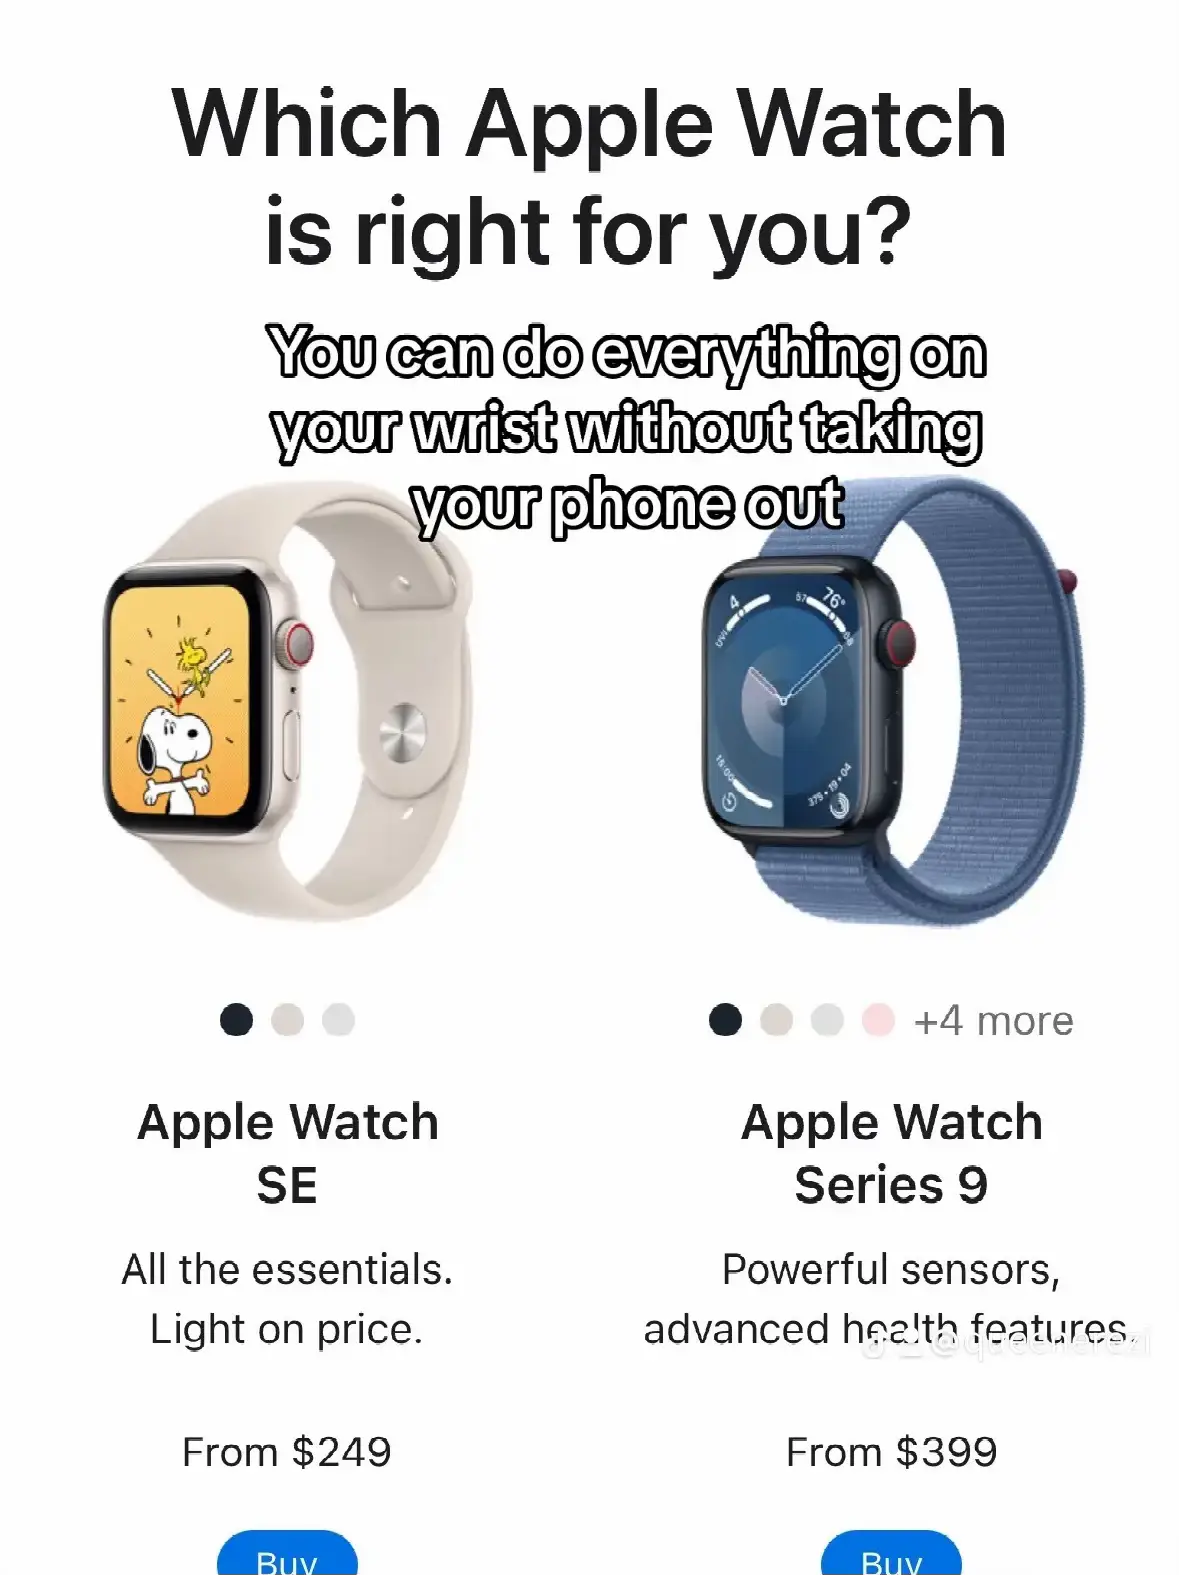 Best Apple Watch for Nurses - Lemon8 Search